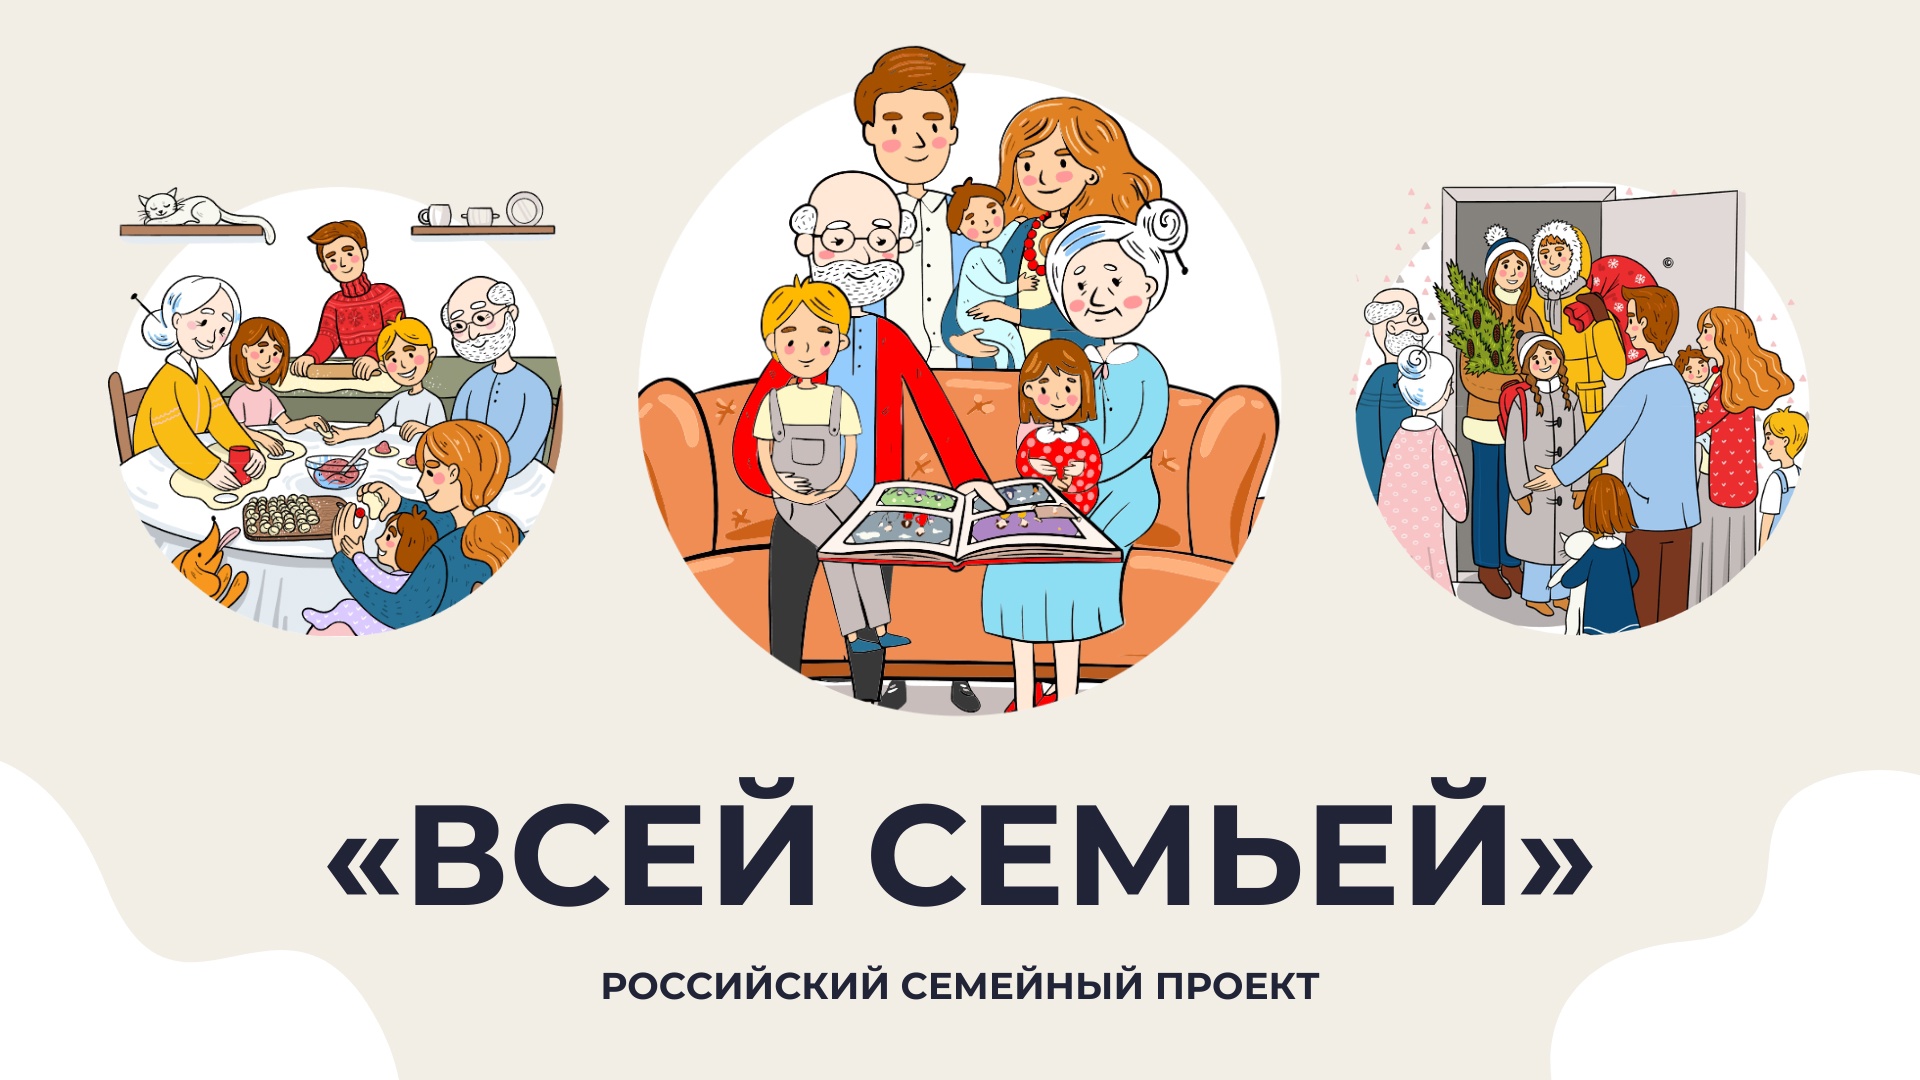 Уважаемые родители! В России стартовал большой семейный проект «Всей семьей».